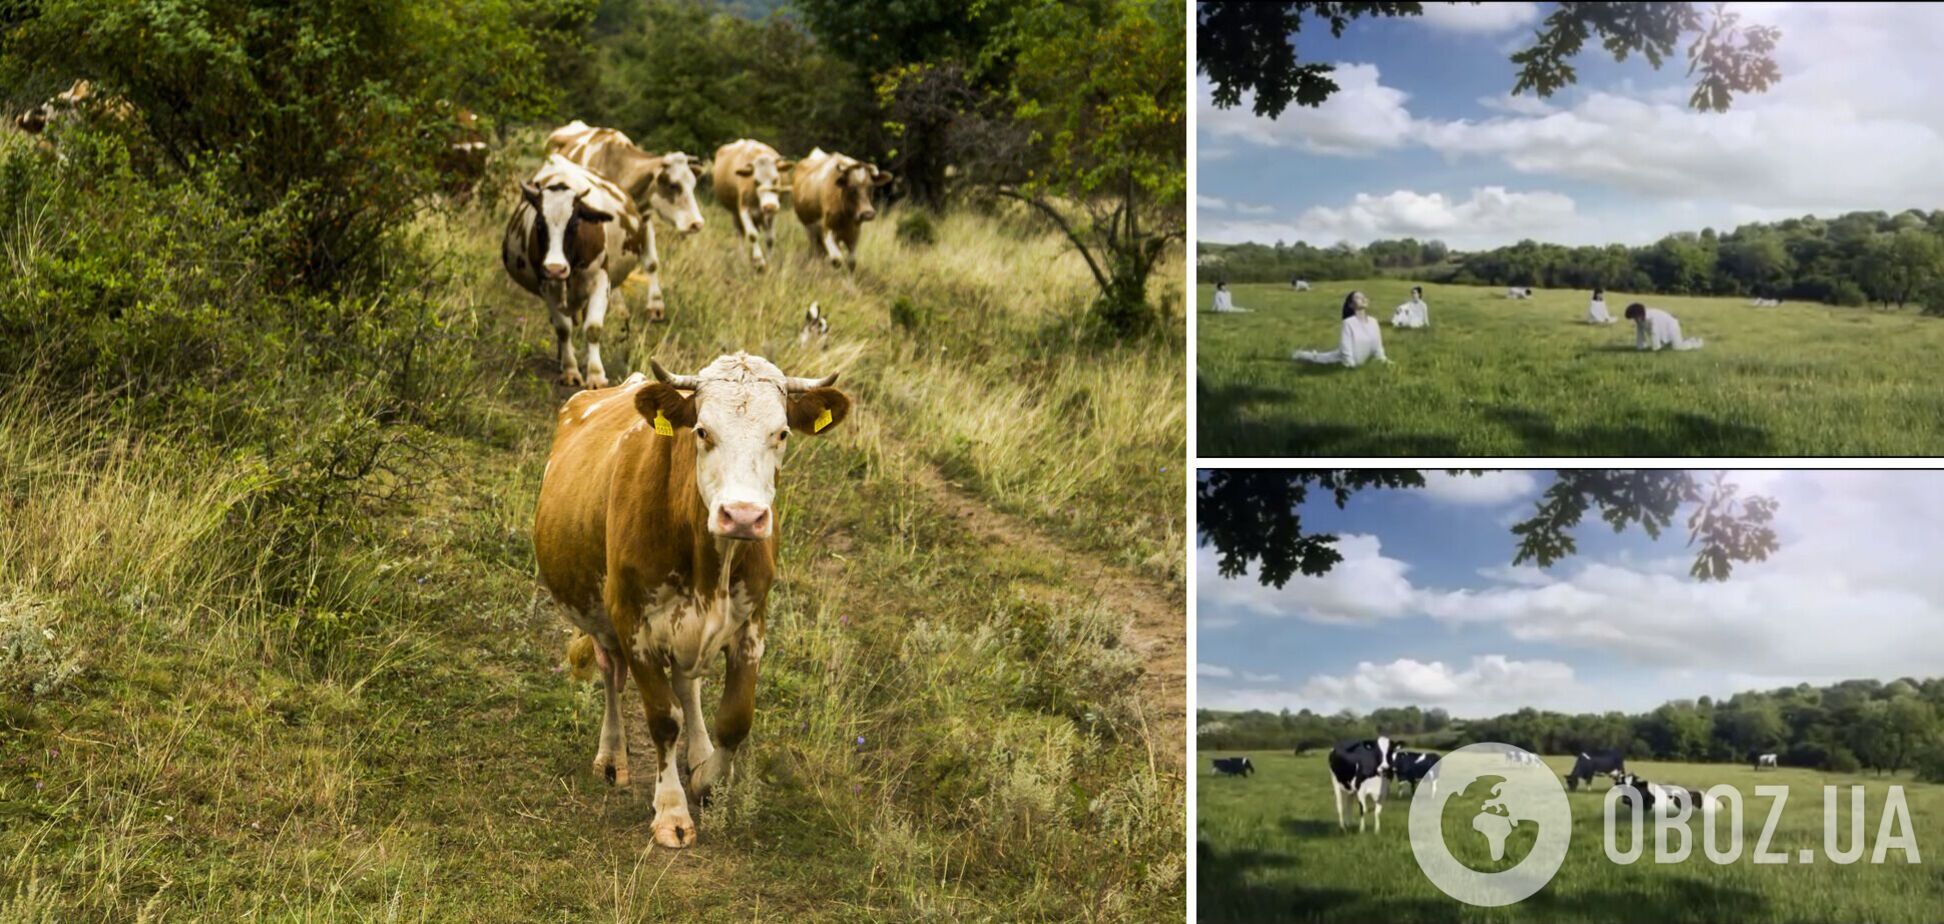 Виробник молока зобразив жінок коровами, яких потрібно доїти. Деталі скандалу та відео